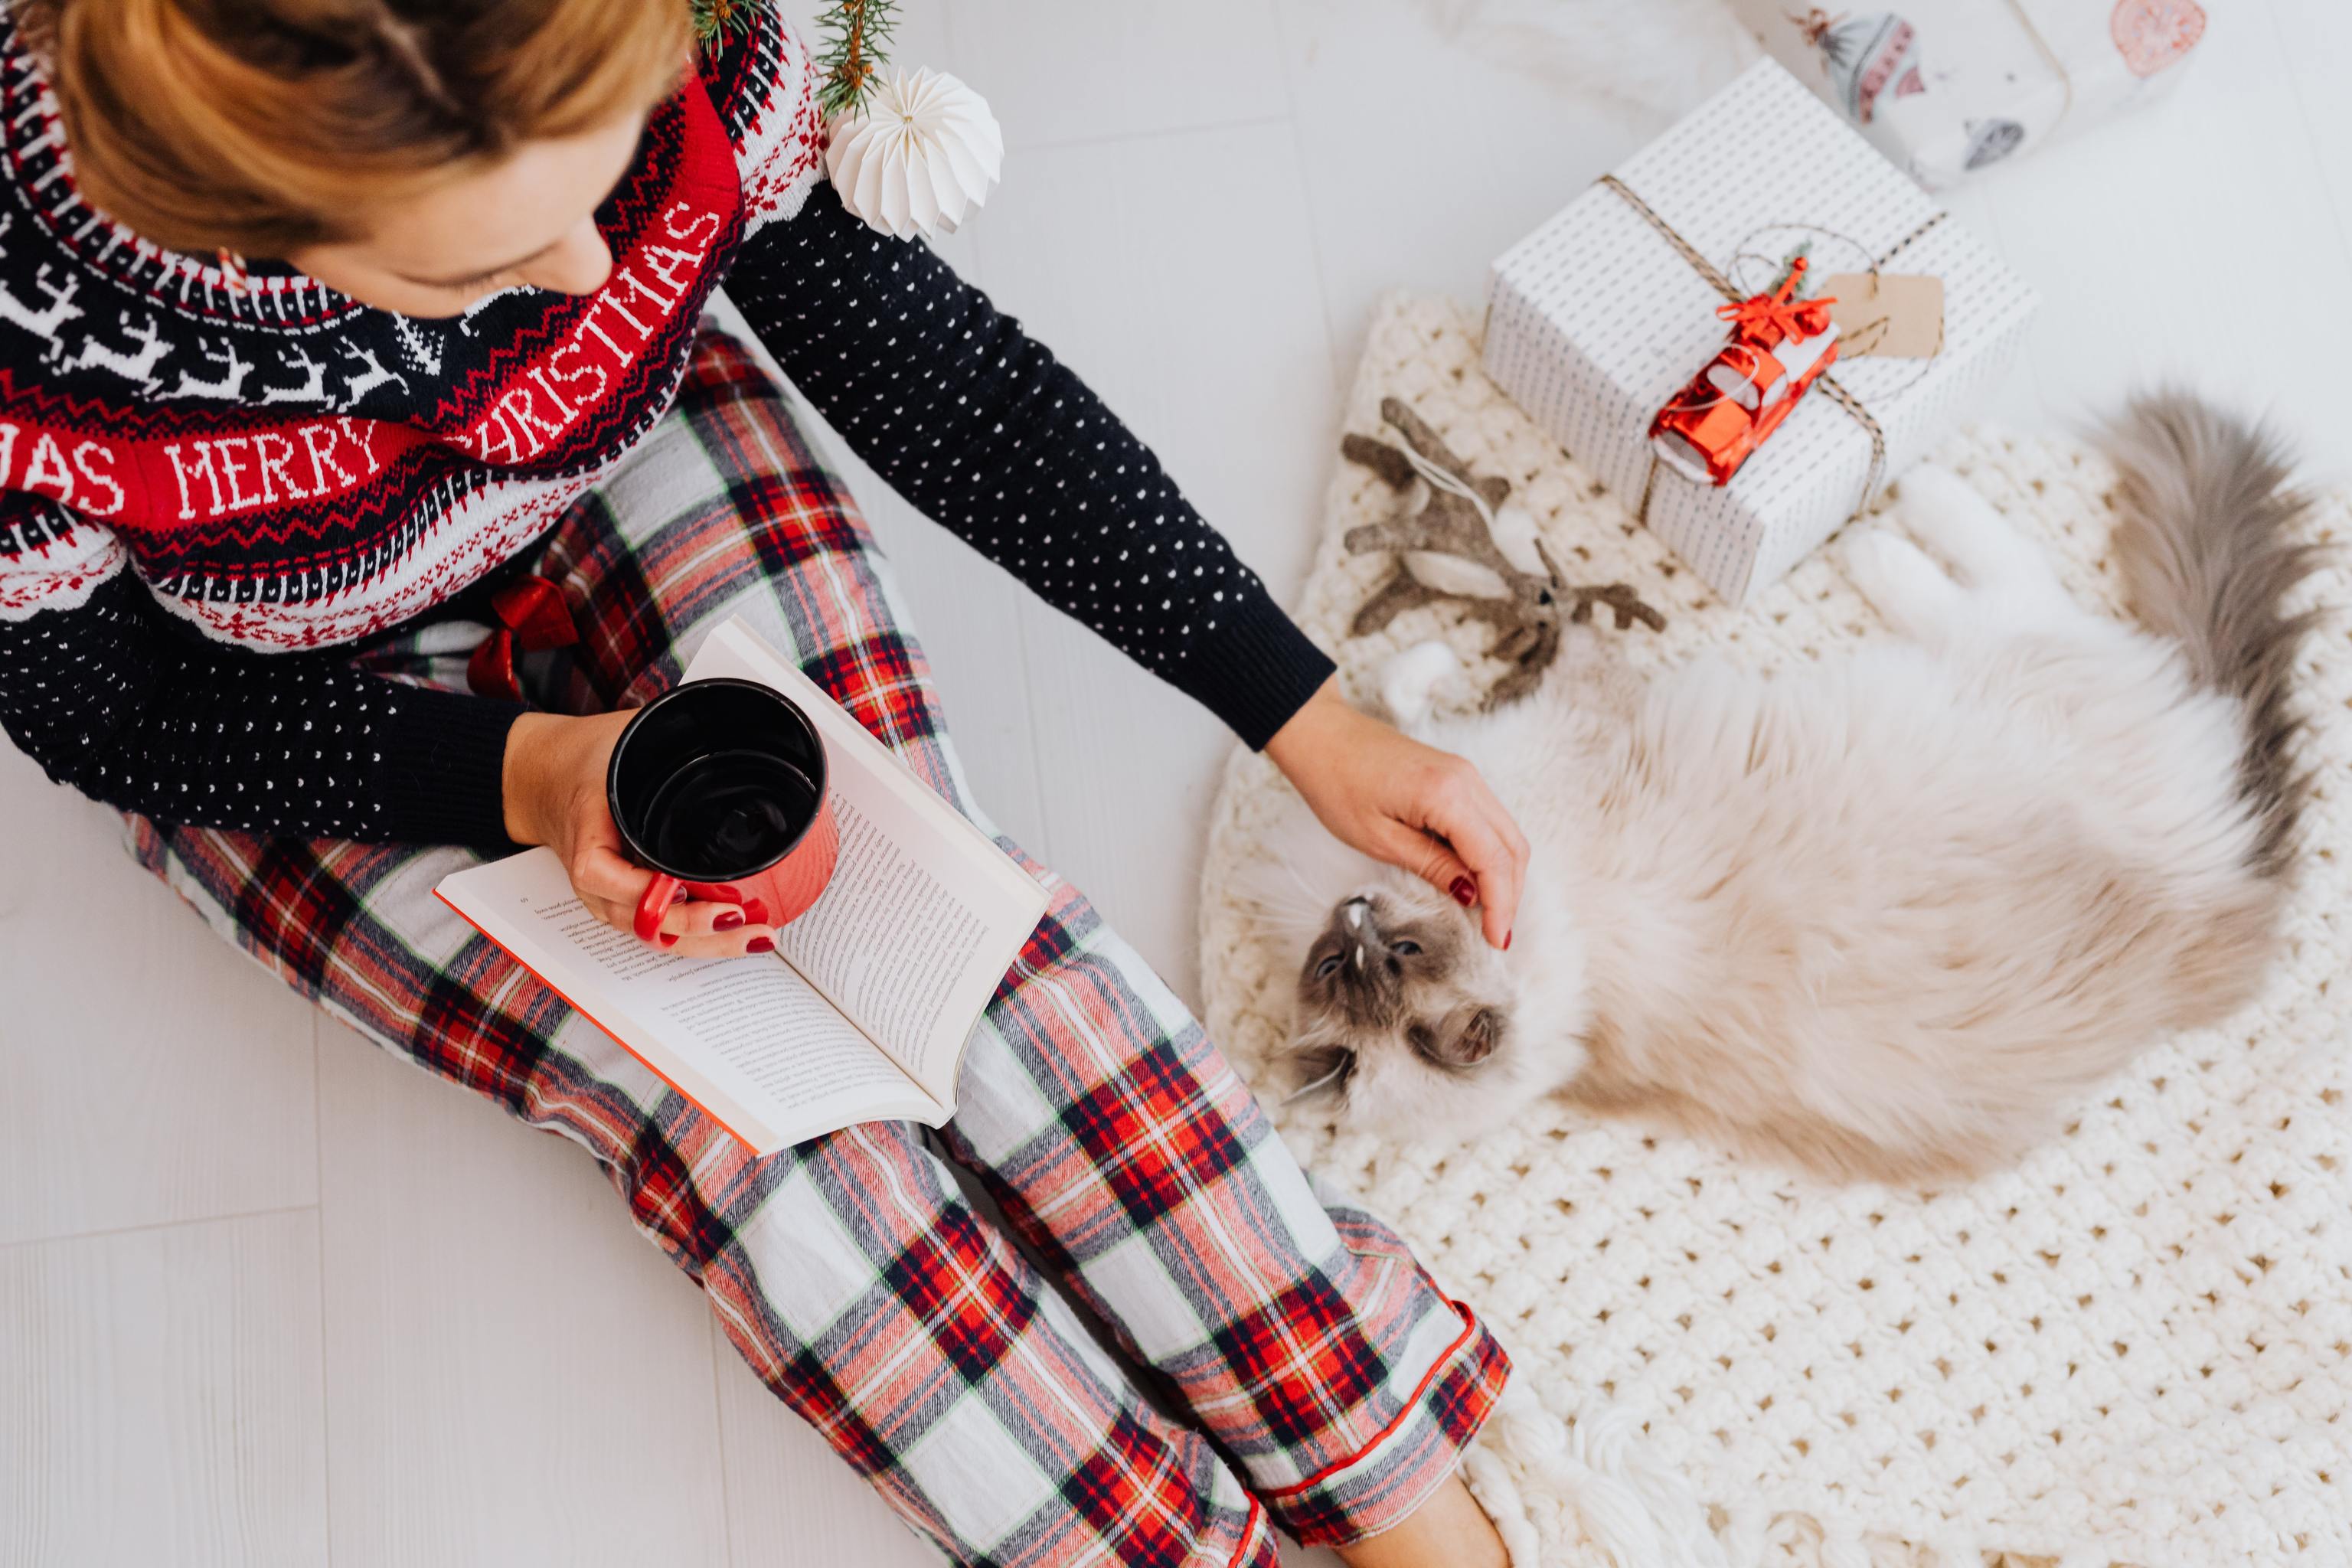 Obligatorio Maravilloso Aliviar 12 pijamas de Navidad para toda la familia, los más coloridos y originales  | Moda